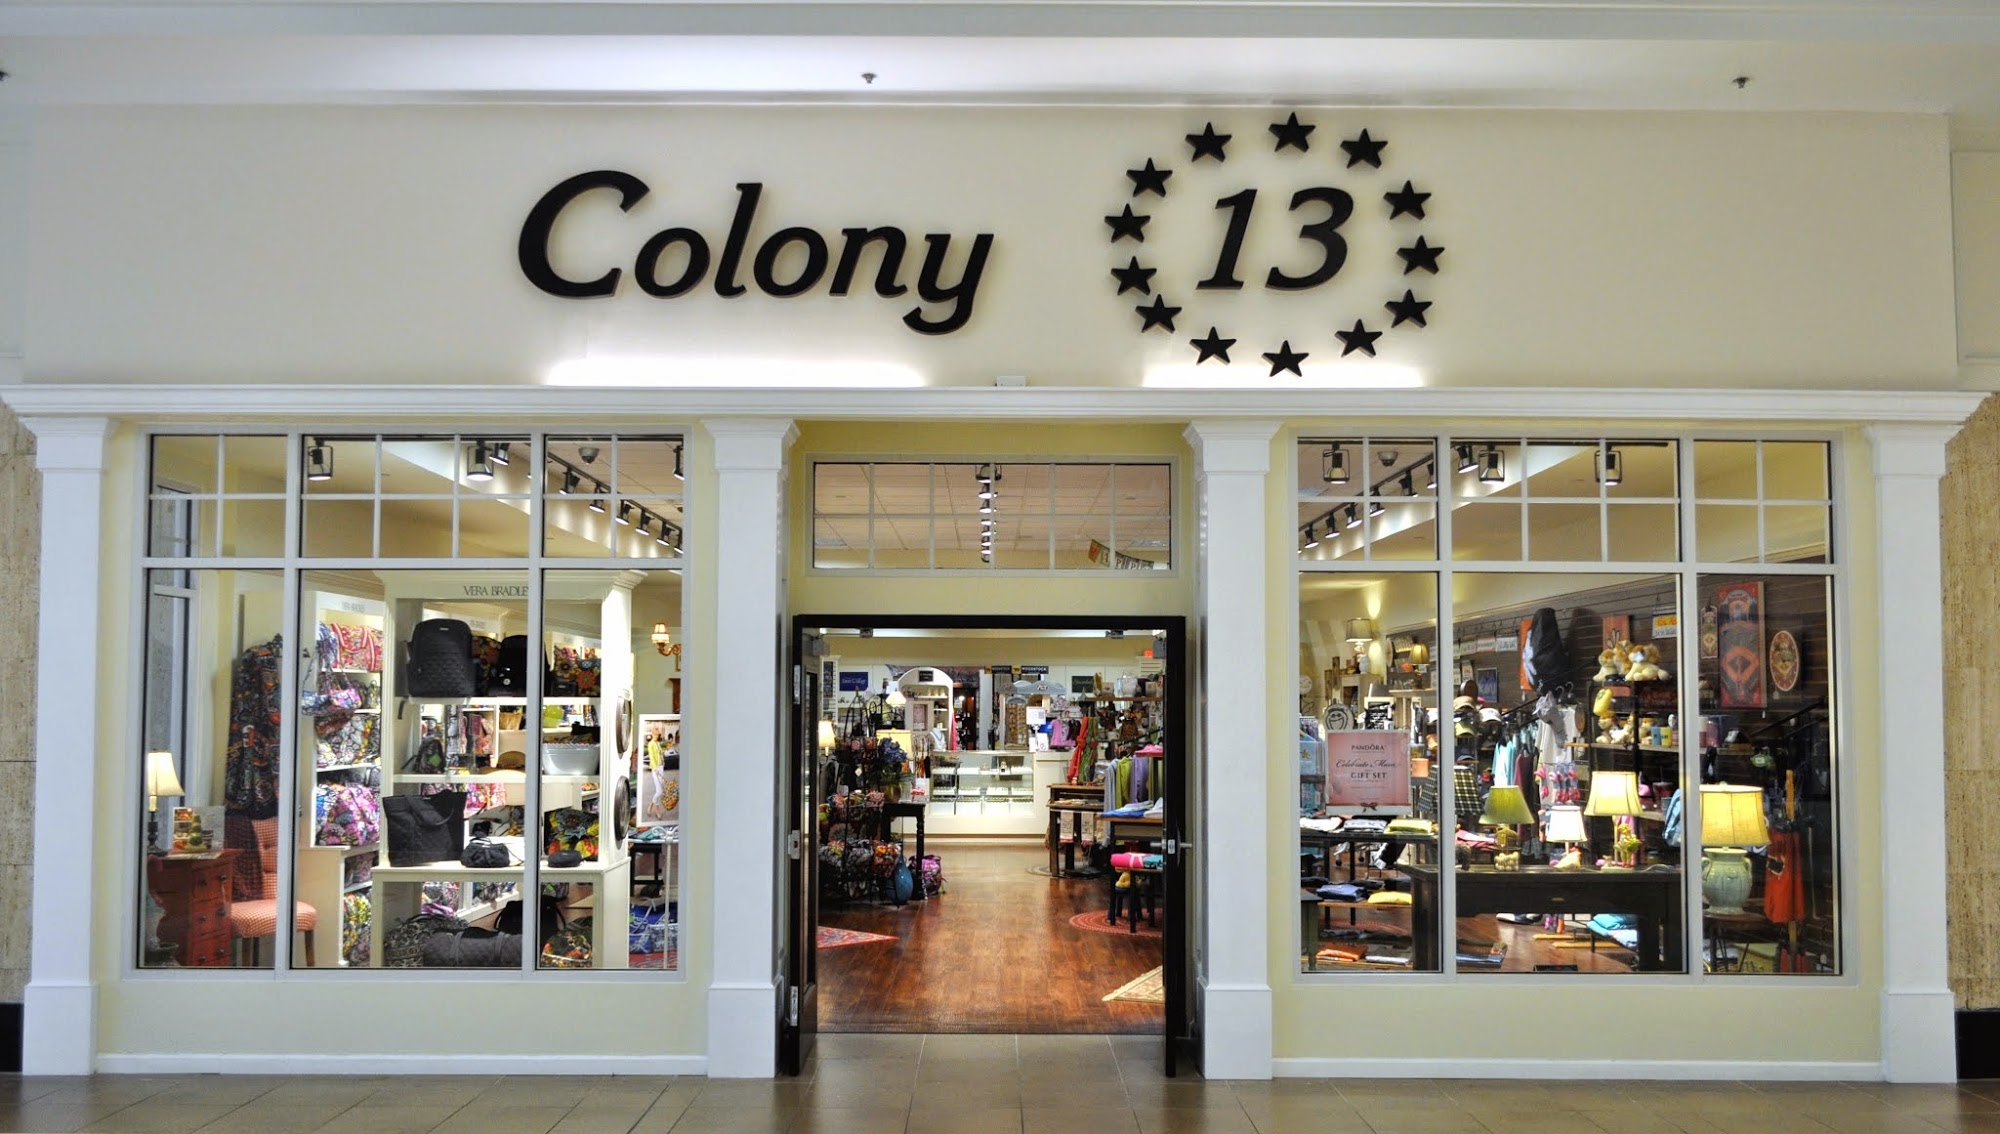 Colony 13